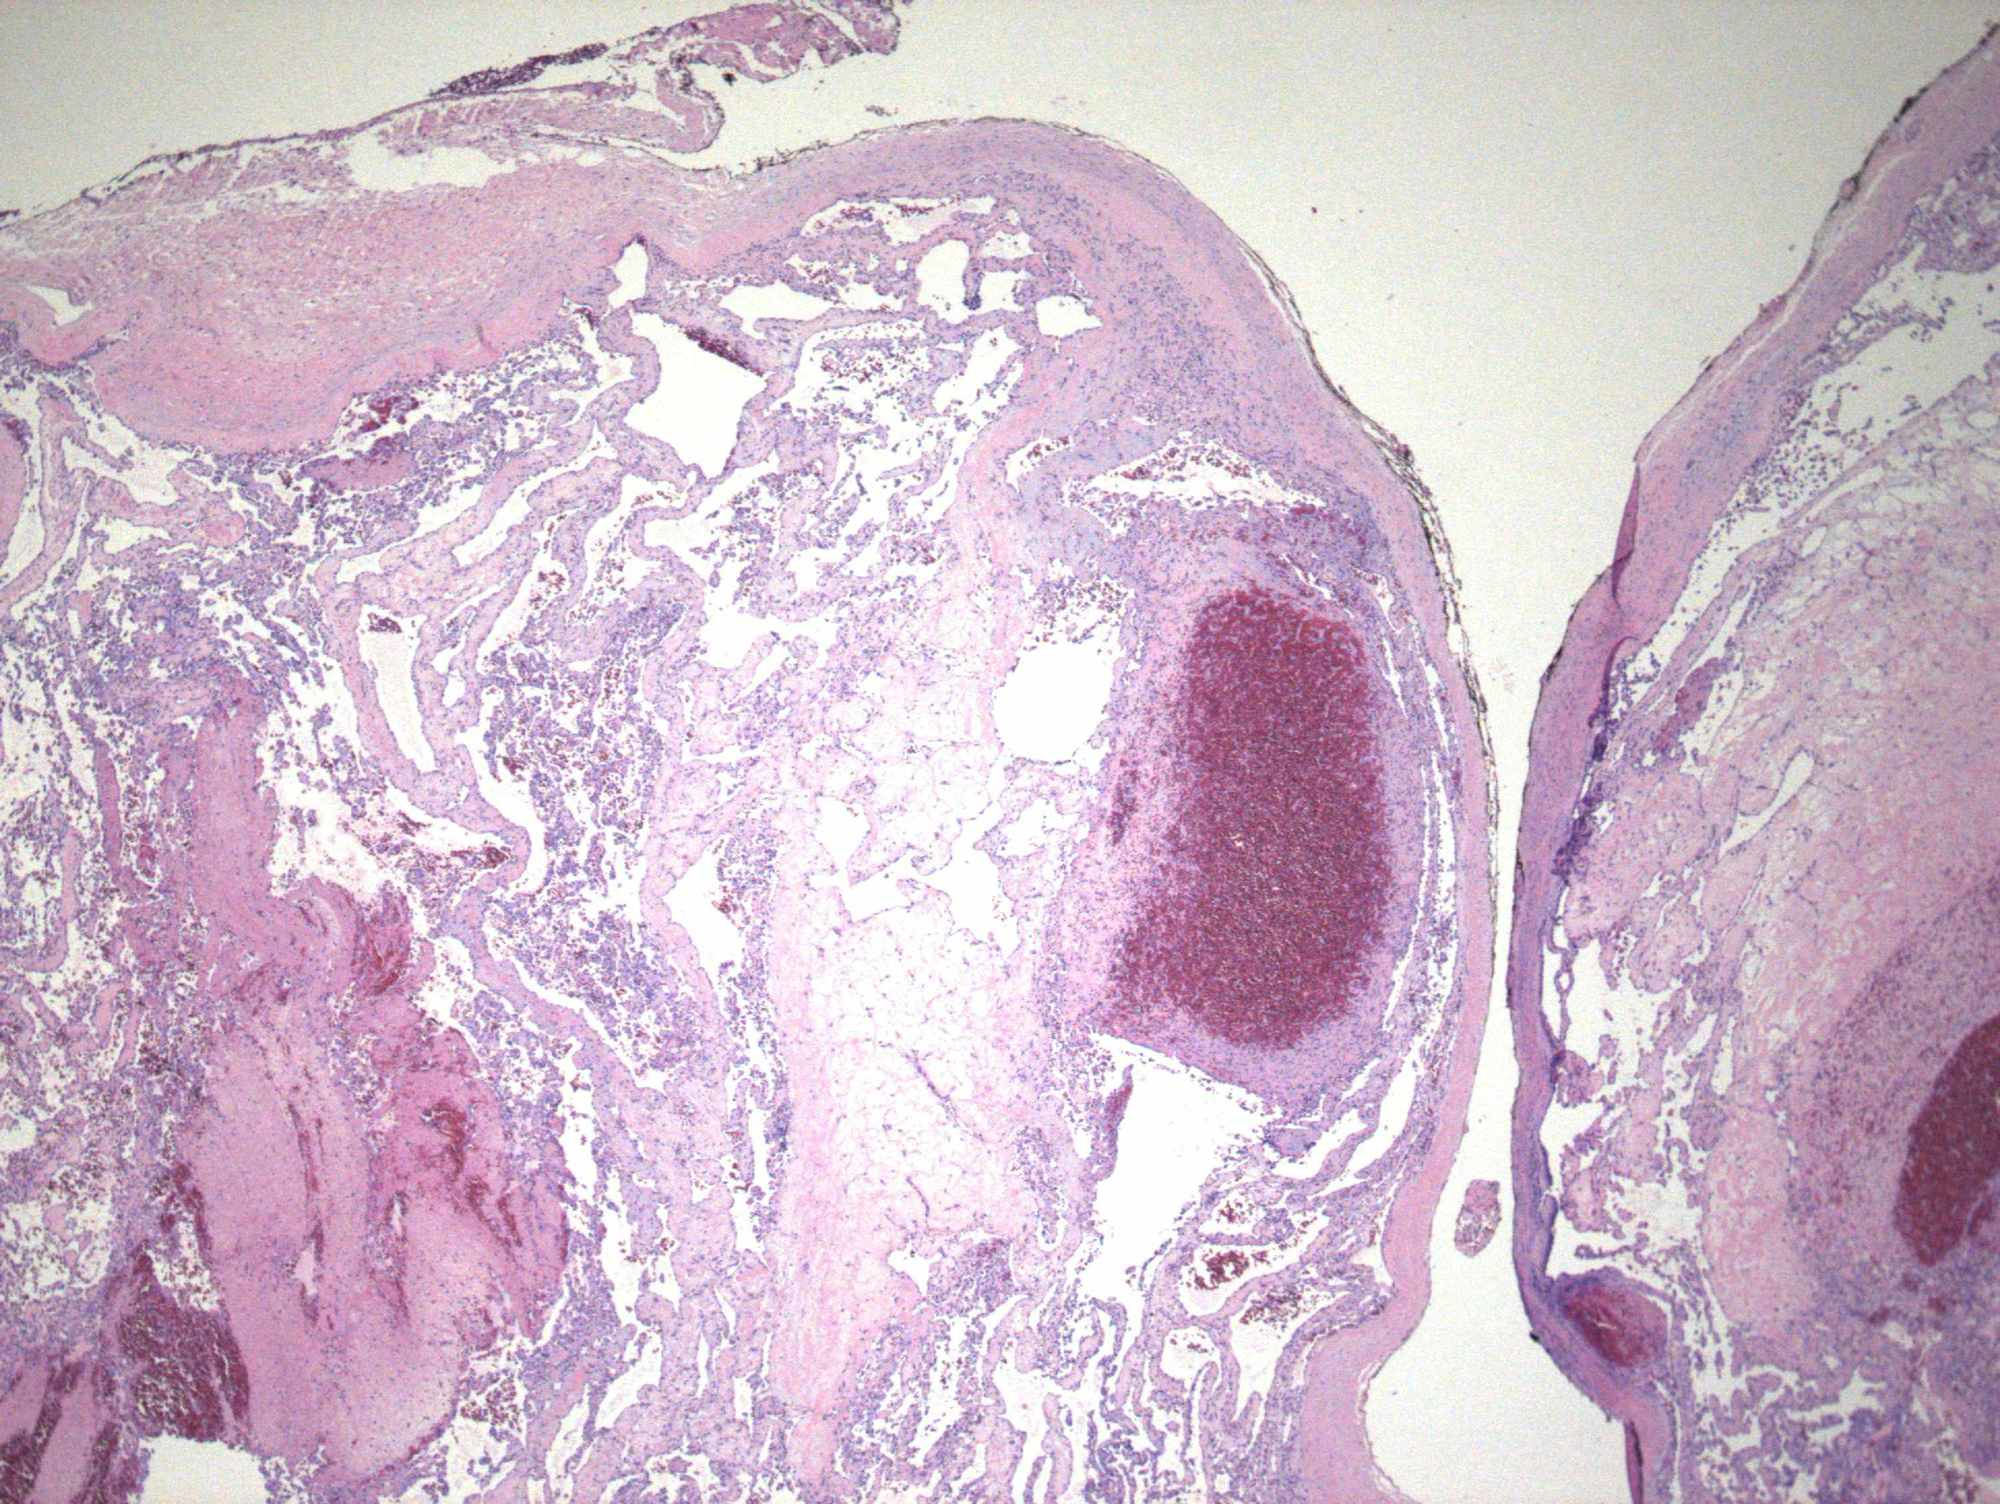 Cureus Intravascular Papillary Endothelial Hyperplasia Of The Orbit